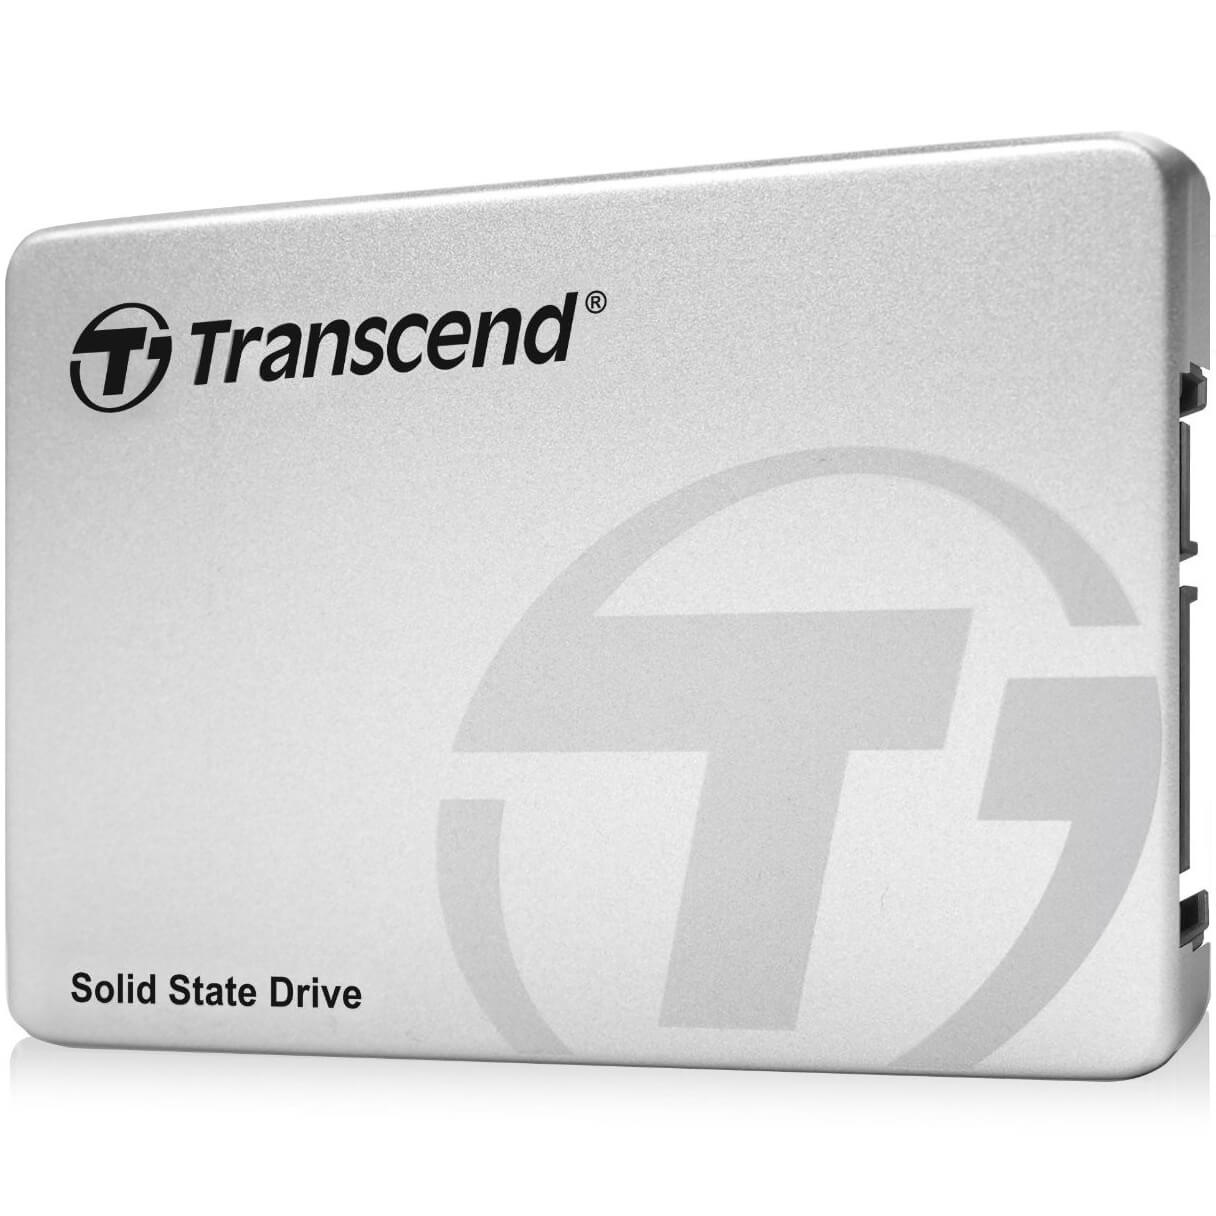  SSD Transcend 370 128GB SATA3, 550/170 MBs 